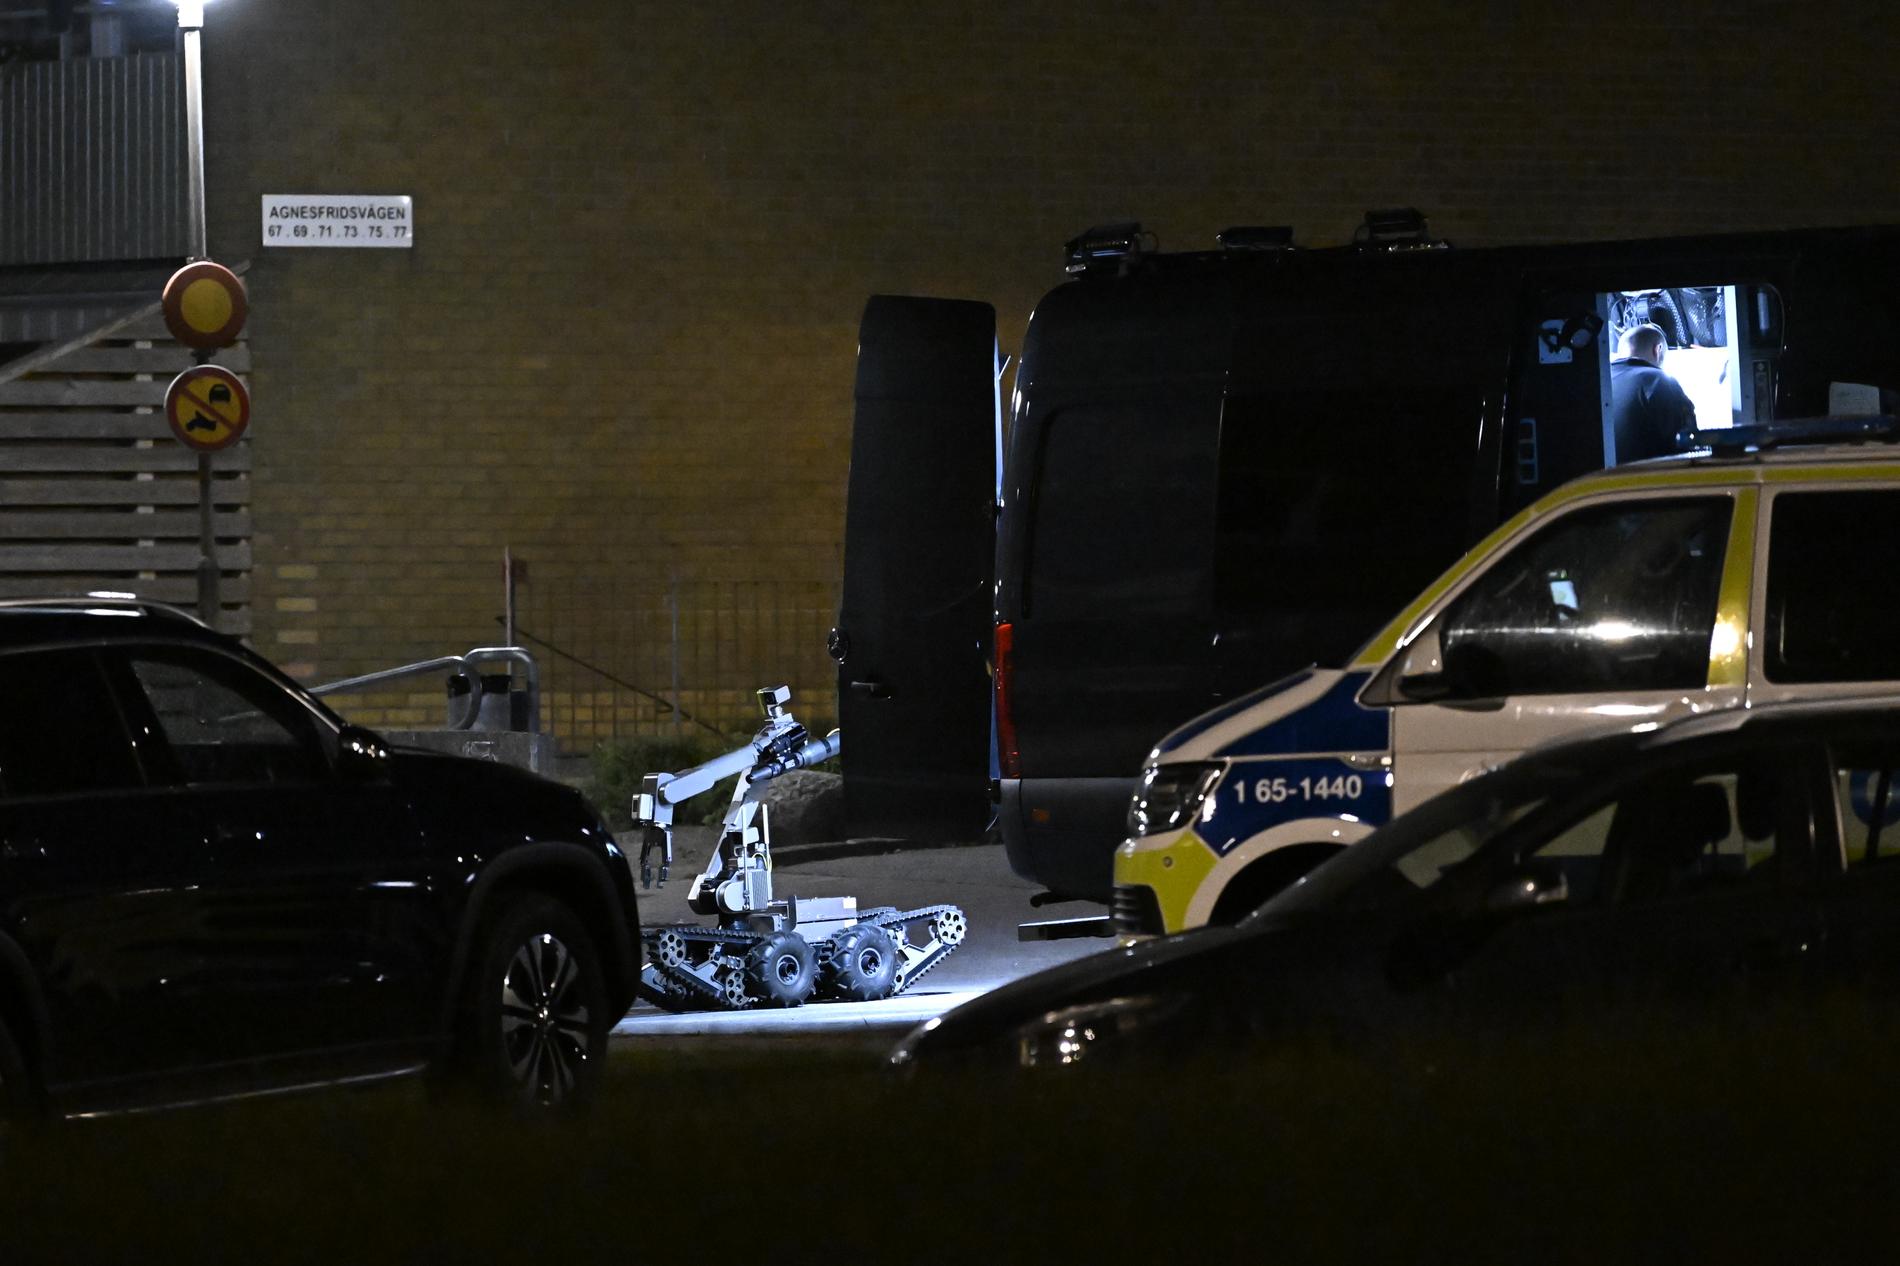 Polis på plats på Almgården i Malmö natten till söndagen efter att ett misstänkt farligt föremål hittats vid ett bostadshus.